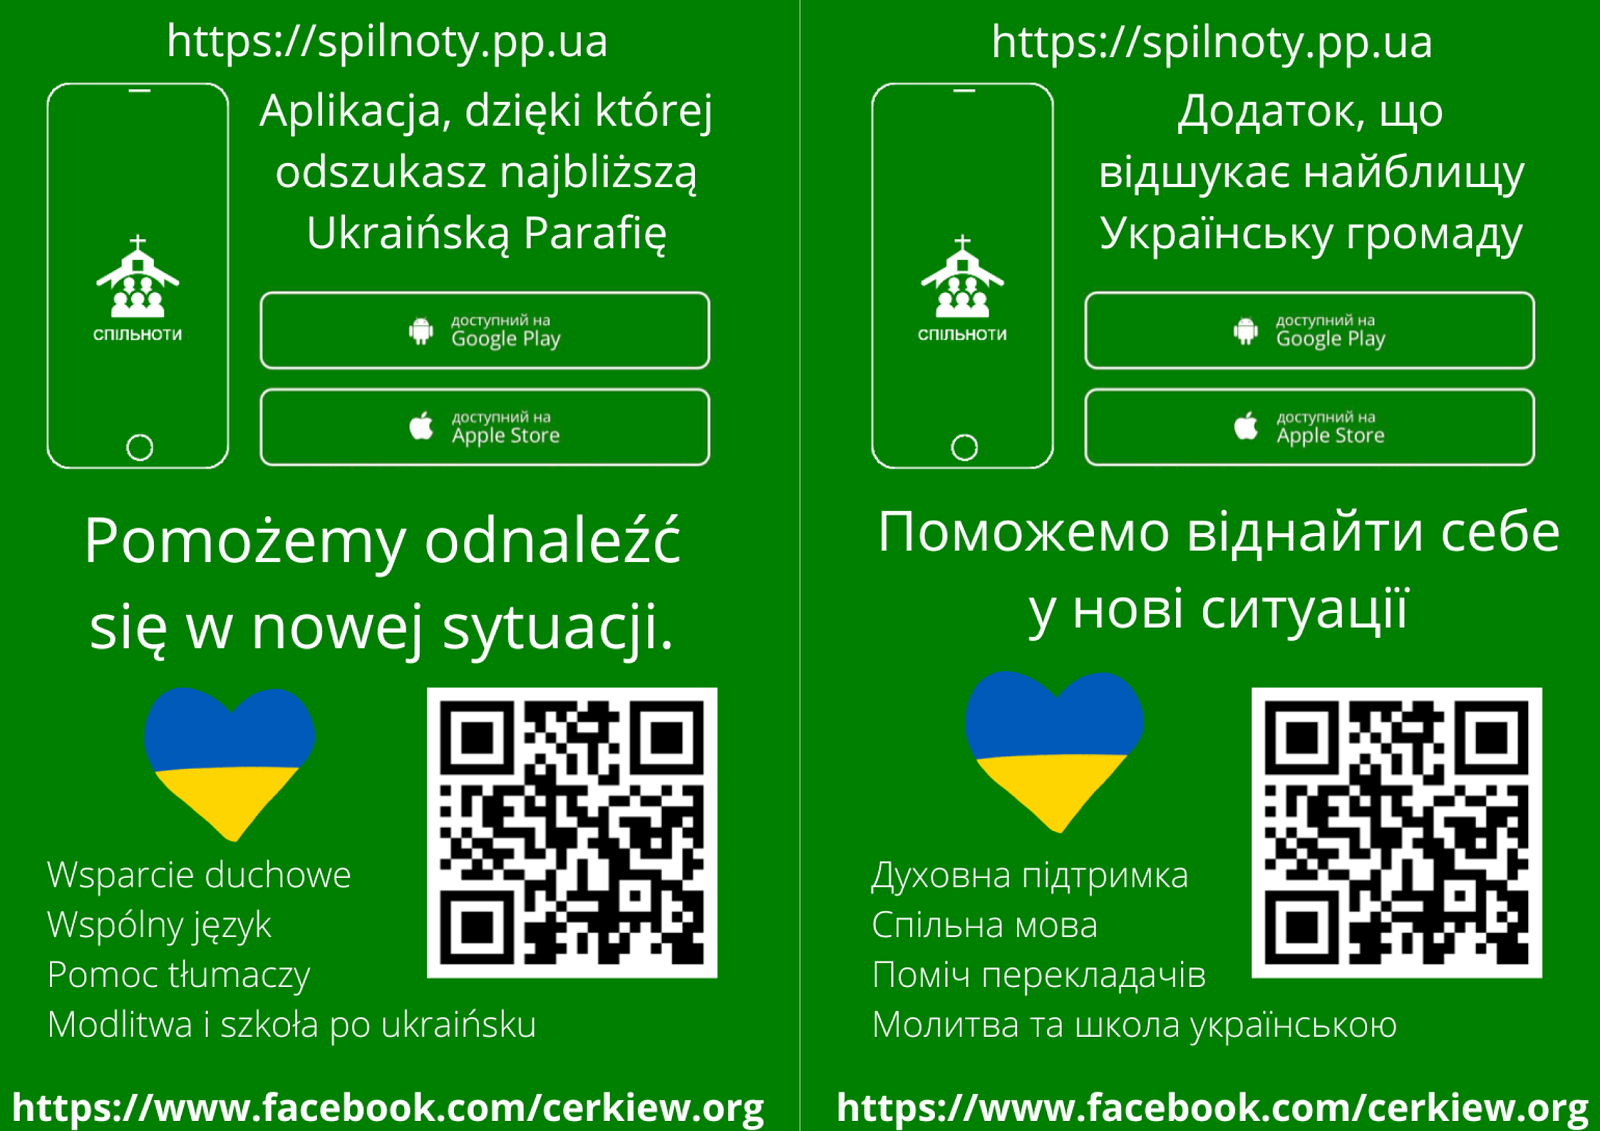 Plakat informujący o aplikacji dla uchodźców z Ukrainy. Mat. prasowe